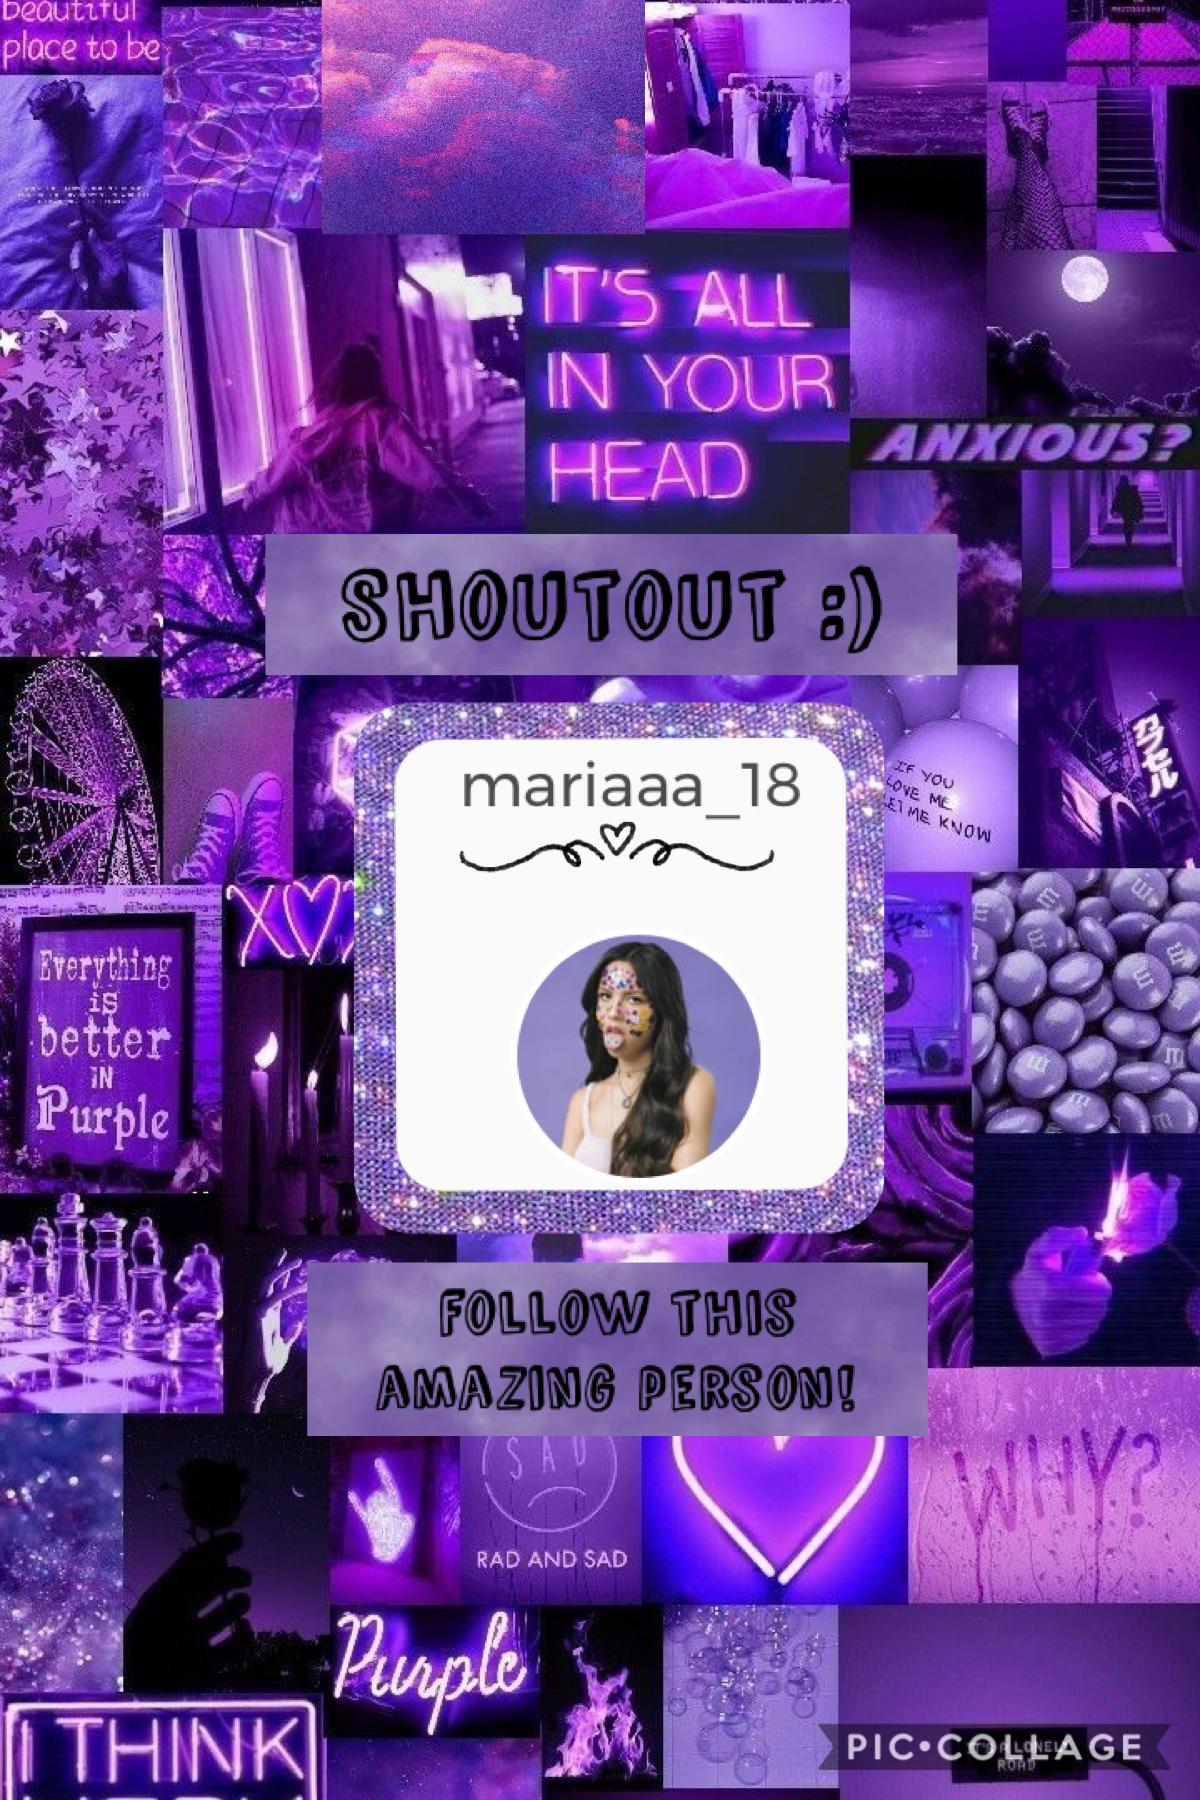 Go follow mariaaa_18!!! 💜